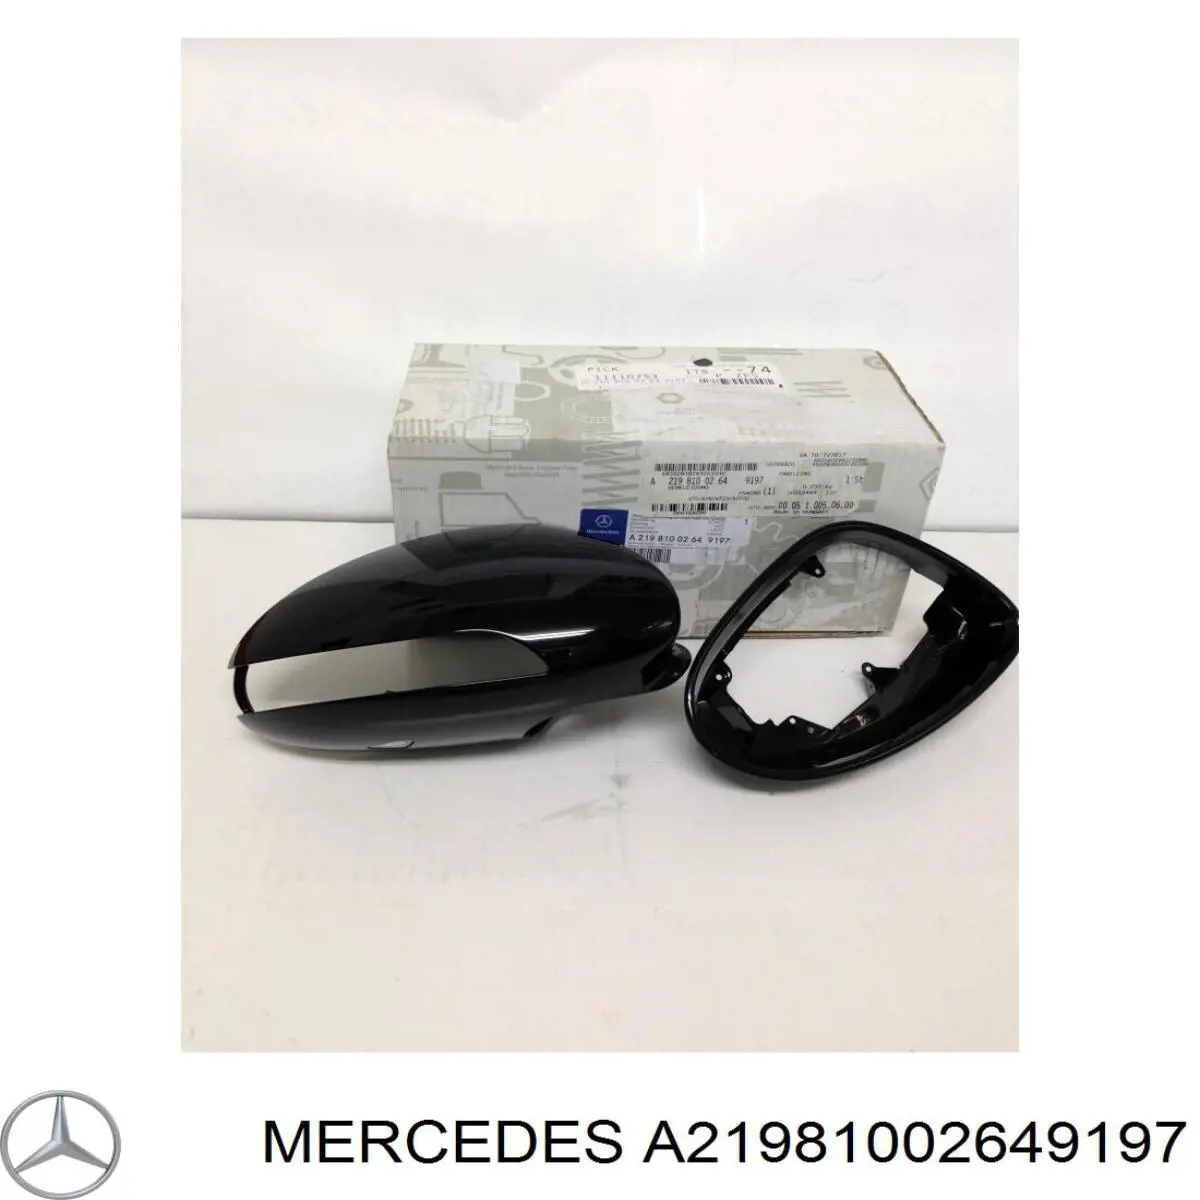 21981002649999 Mercedes cubierta de espejo retrovisor derecho